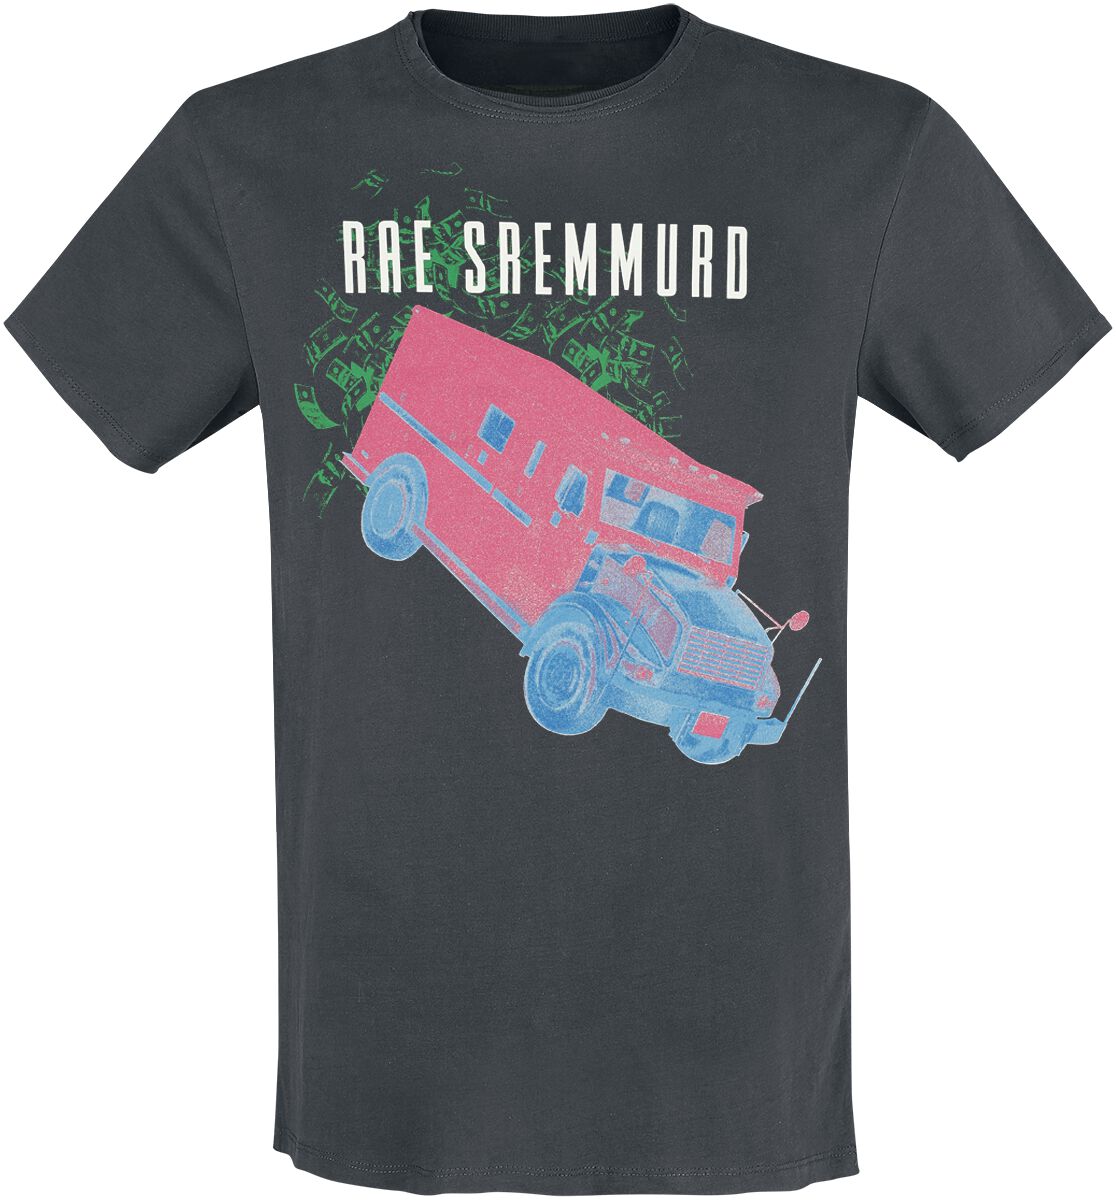 Rae Sremmurd T-Shirt - Amplified Collection - Cash Heist - S bis 3XL - für Männer - Größe S - charcoal  - Lizenziertes Merchandise!